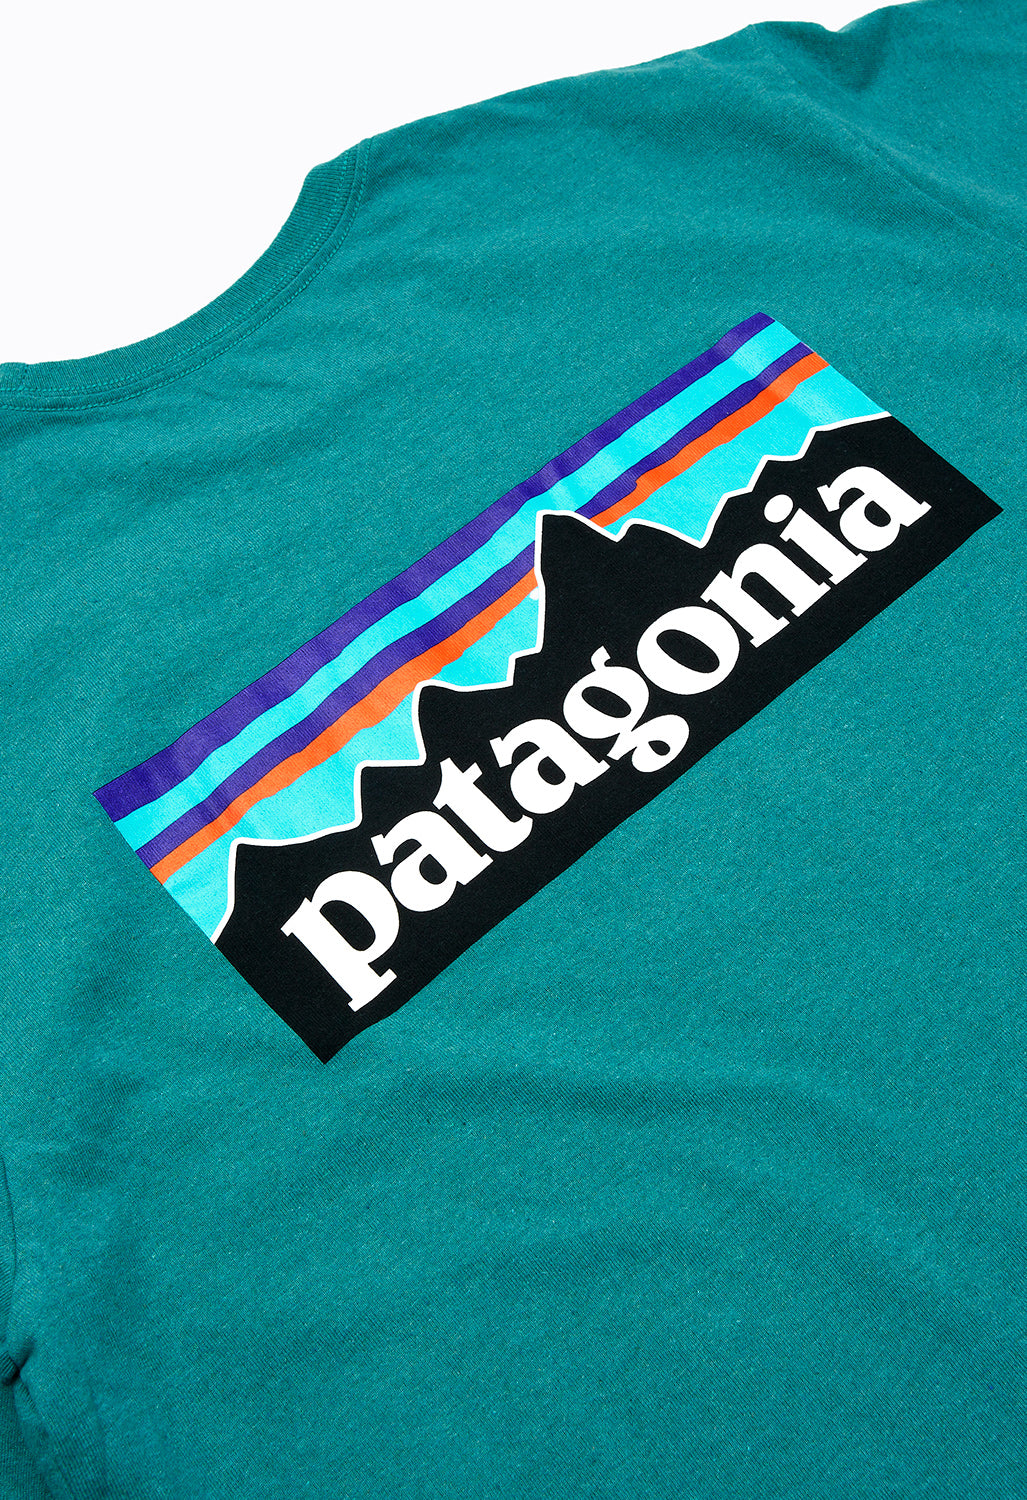 Patagonia Men's P-6 Logo Responsibili-Tee - Belay Blue